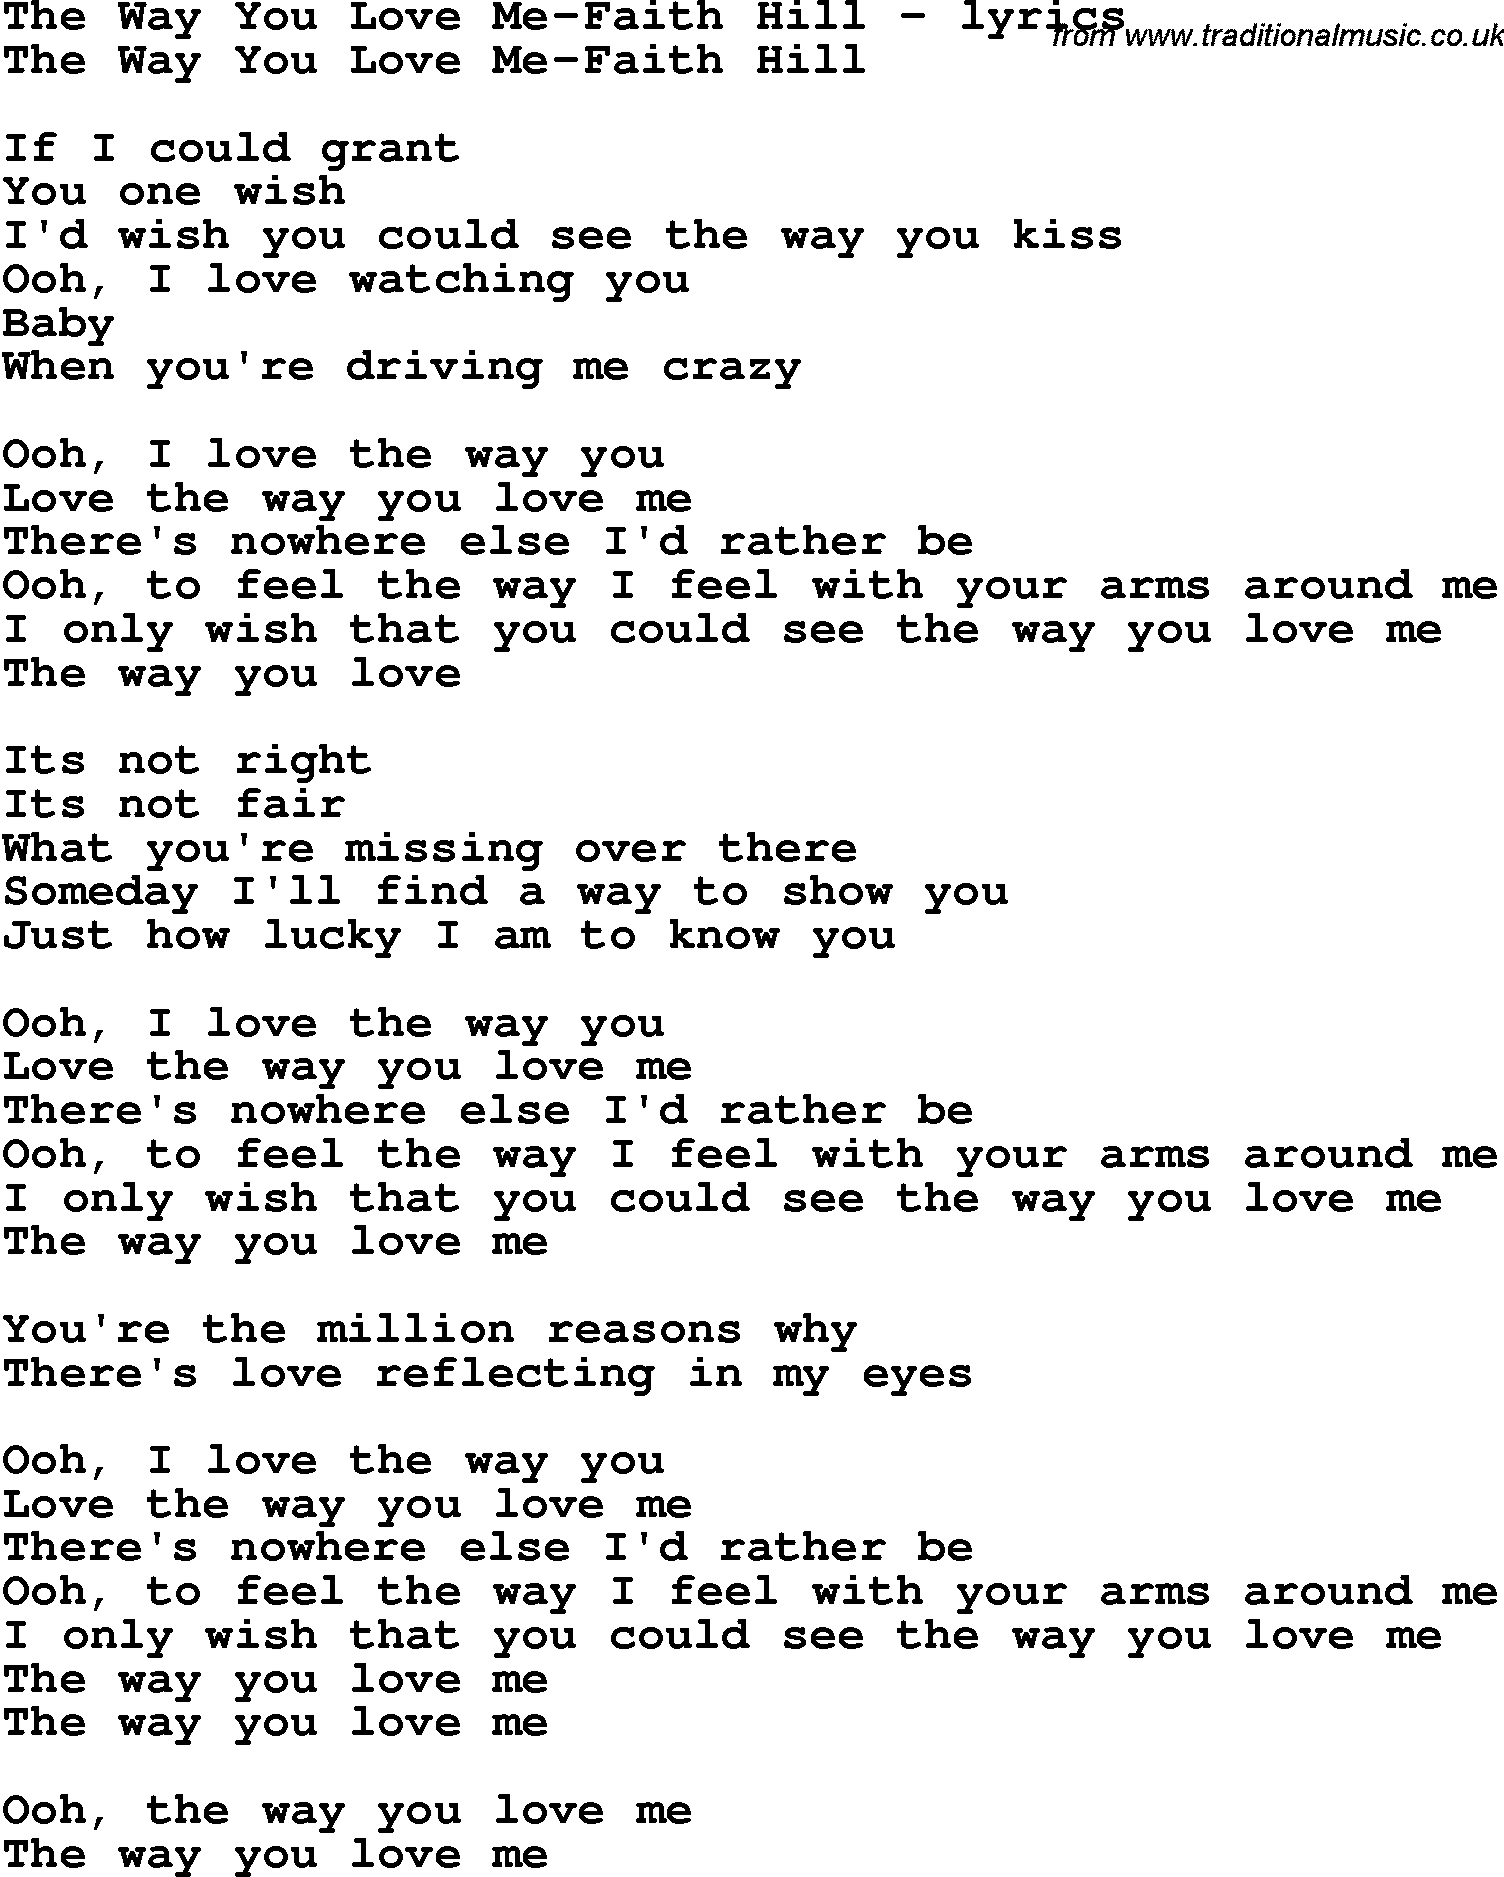 Love Song Lyrics for: The Way You Love Me-Faith Hill